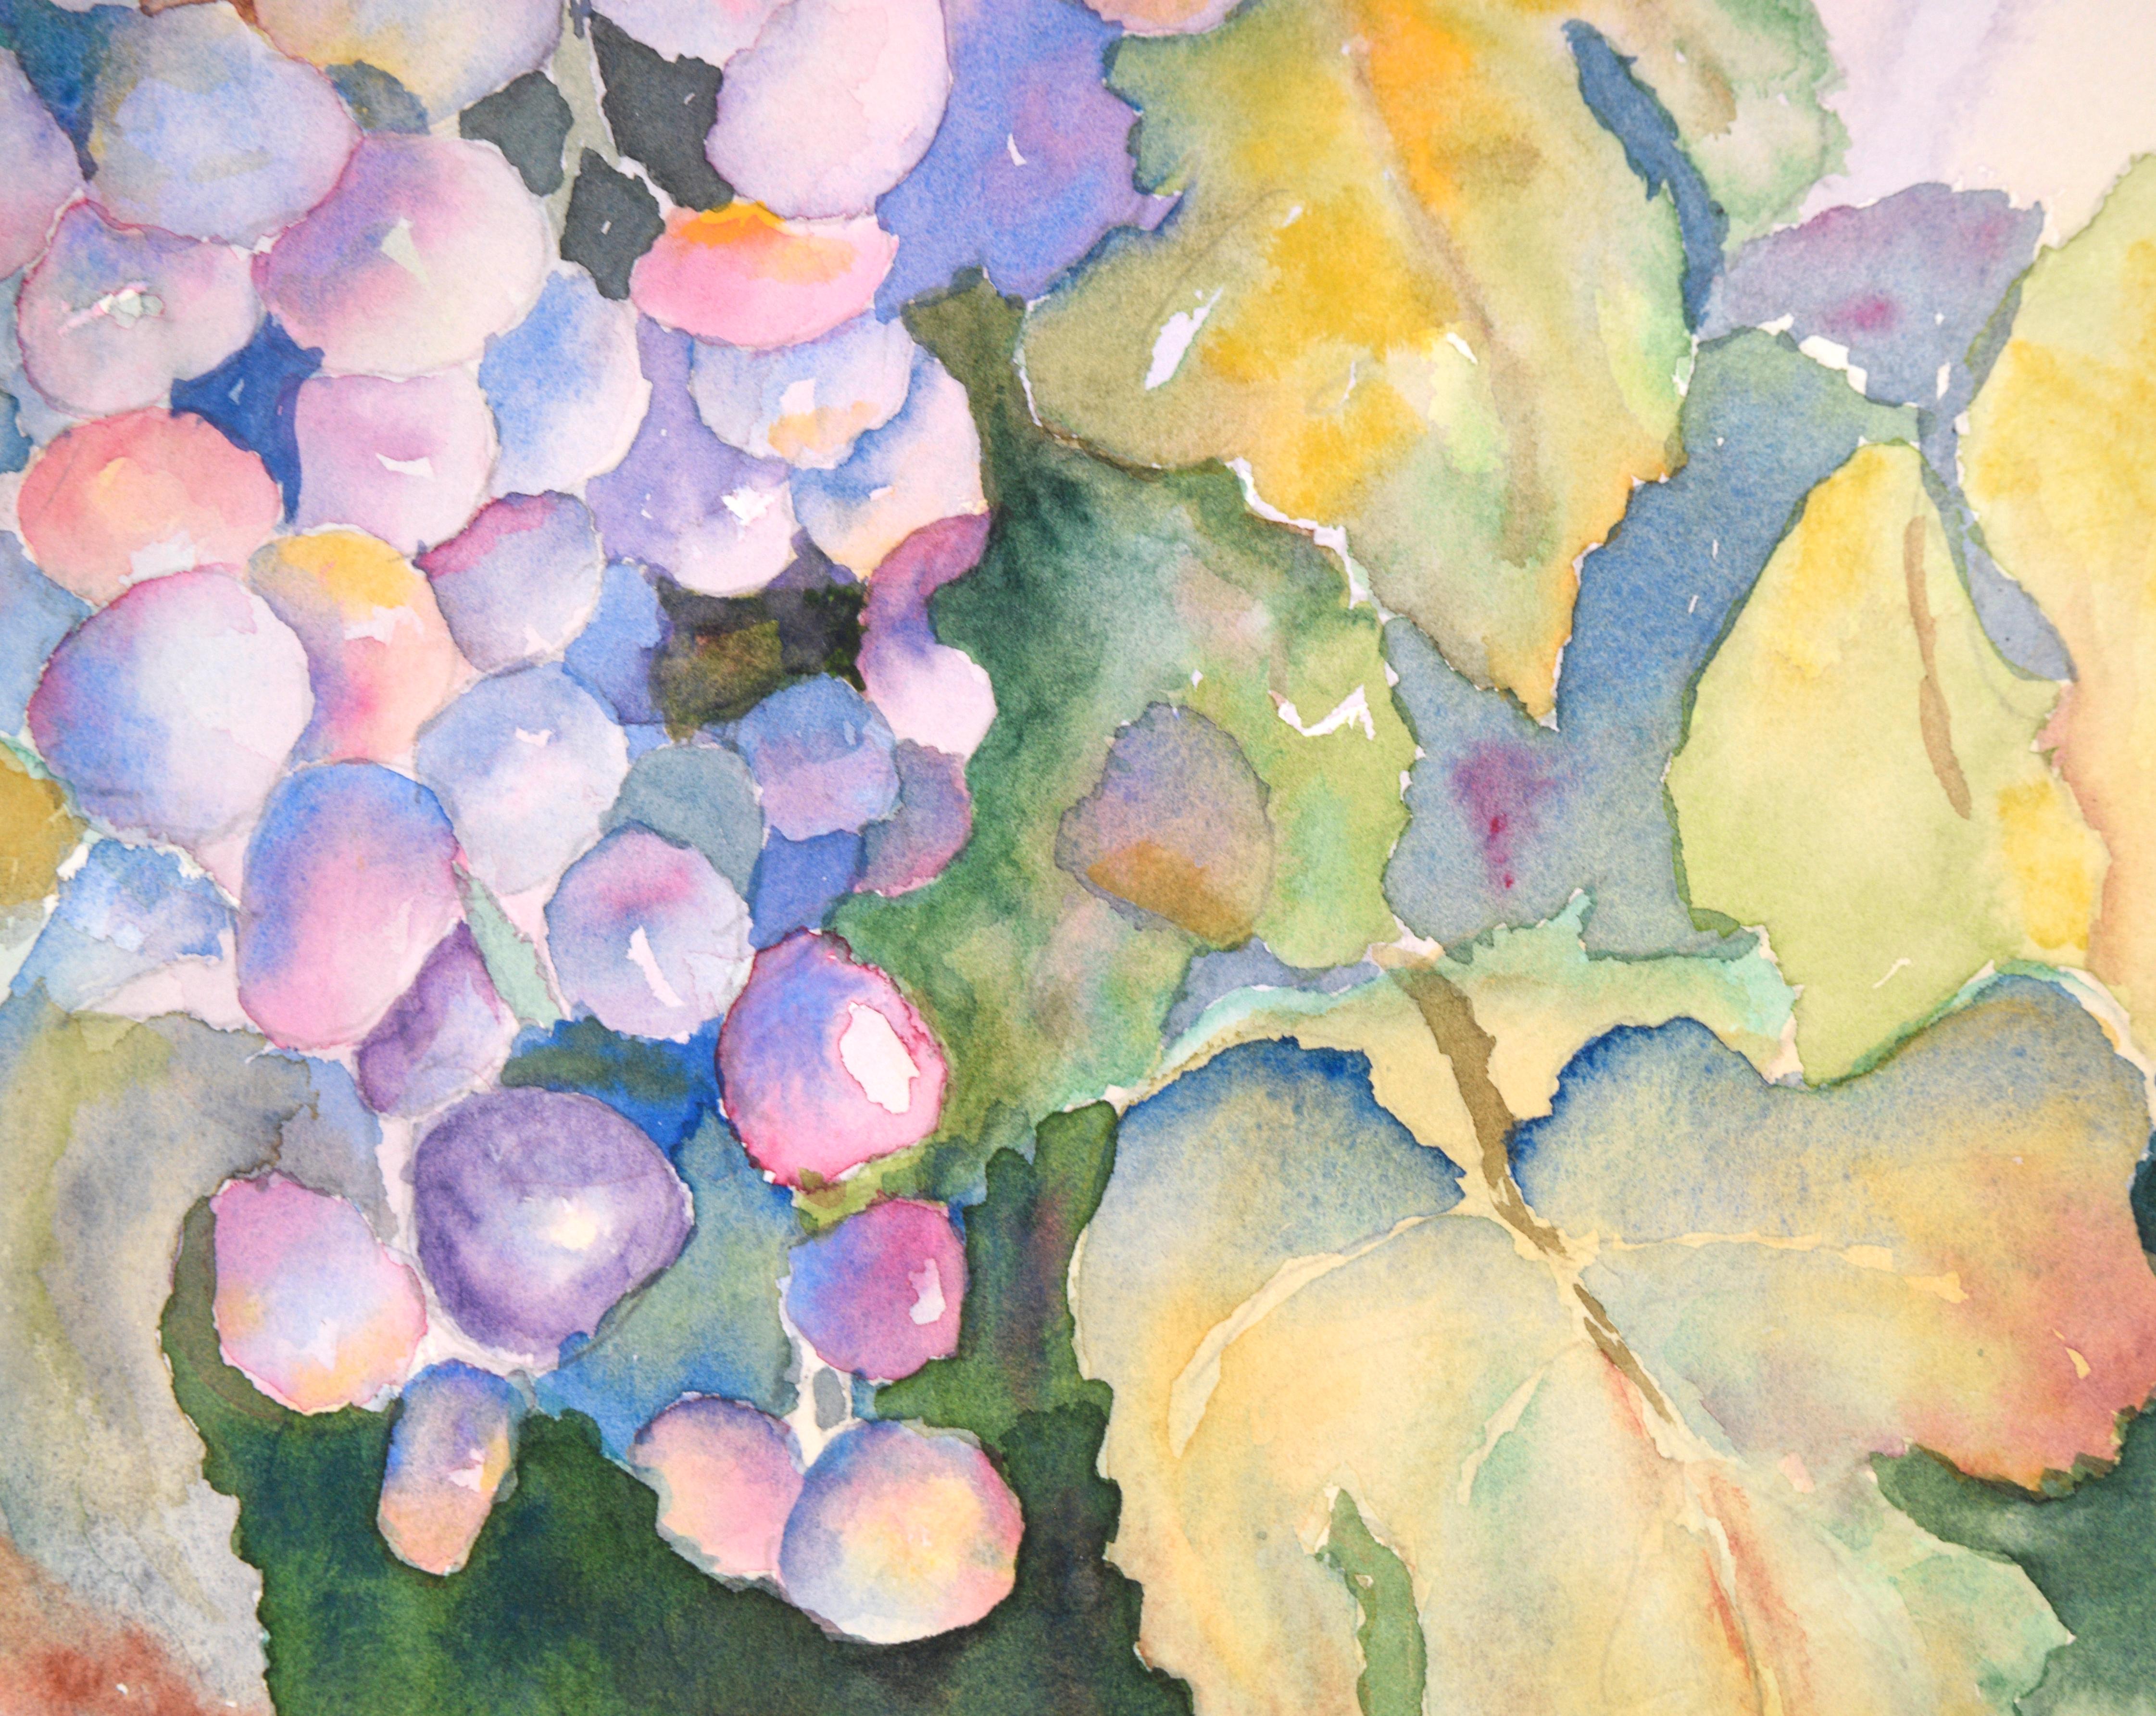 Lebhaftes Stillleben von Weintrauben an der Rebe von einem unbekannten Künstler (20. Jahrhundert). Eine Traube mit leuchtend violetten und roten Trauben lugt hinter üppig grünen Reben und Blättern hervor.

Signiert (unleserlich) in der rechten